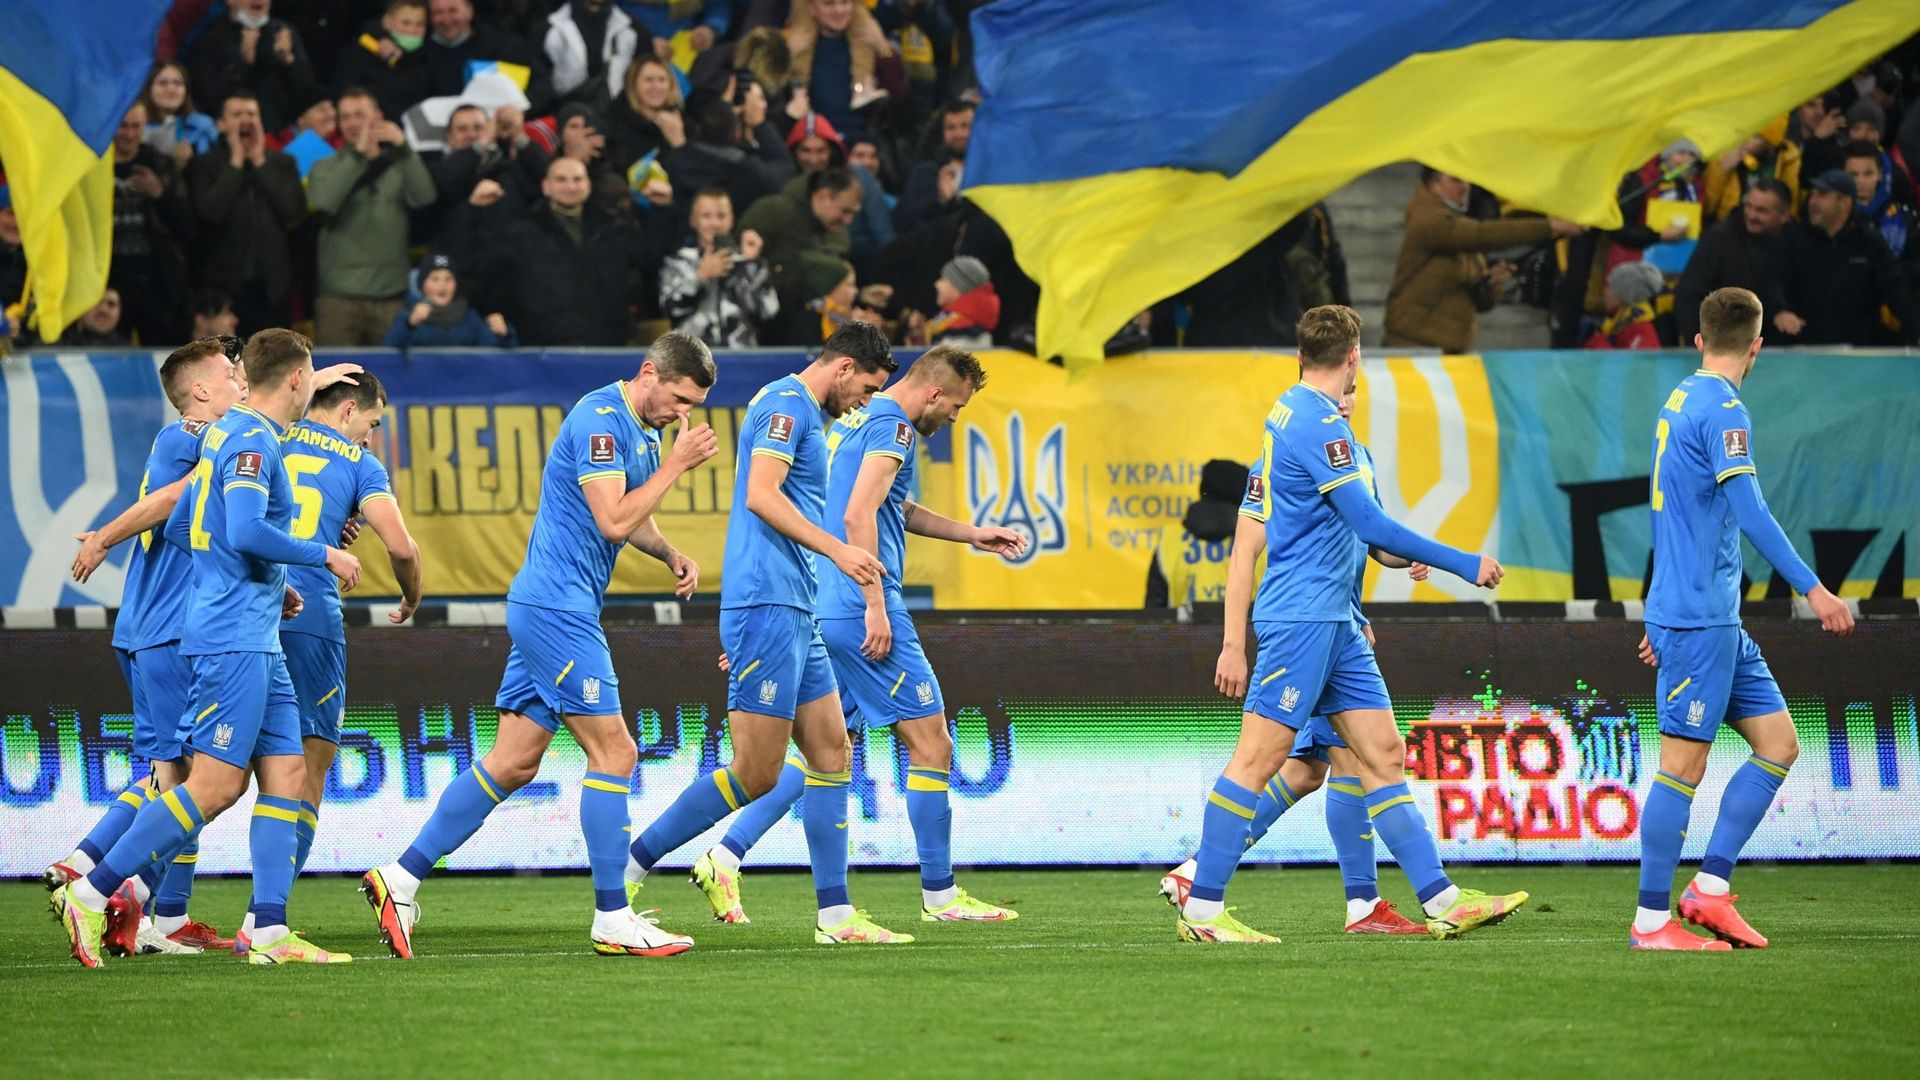 Football : Image d'illustration de l'équipe d'Ukraine